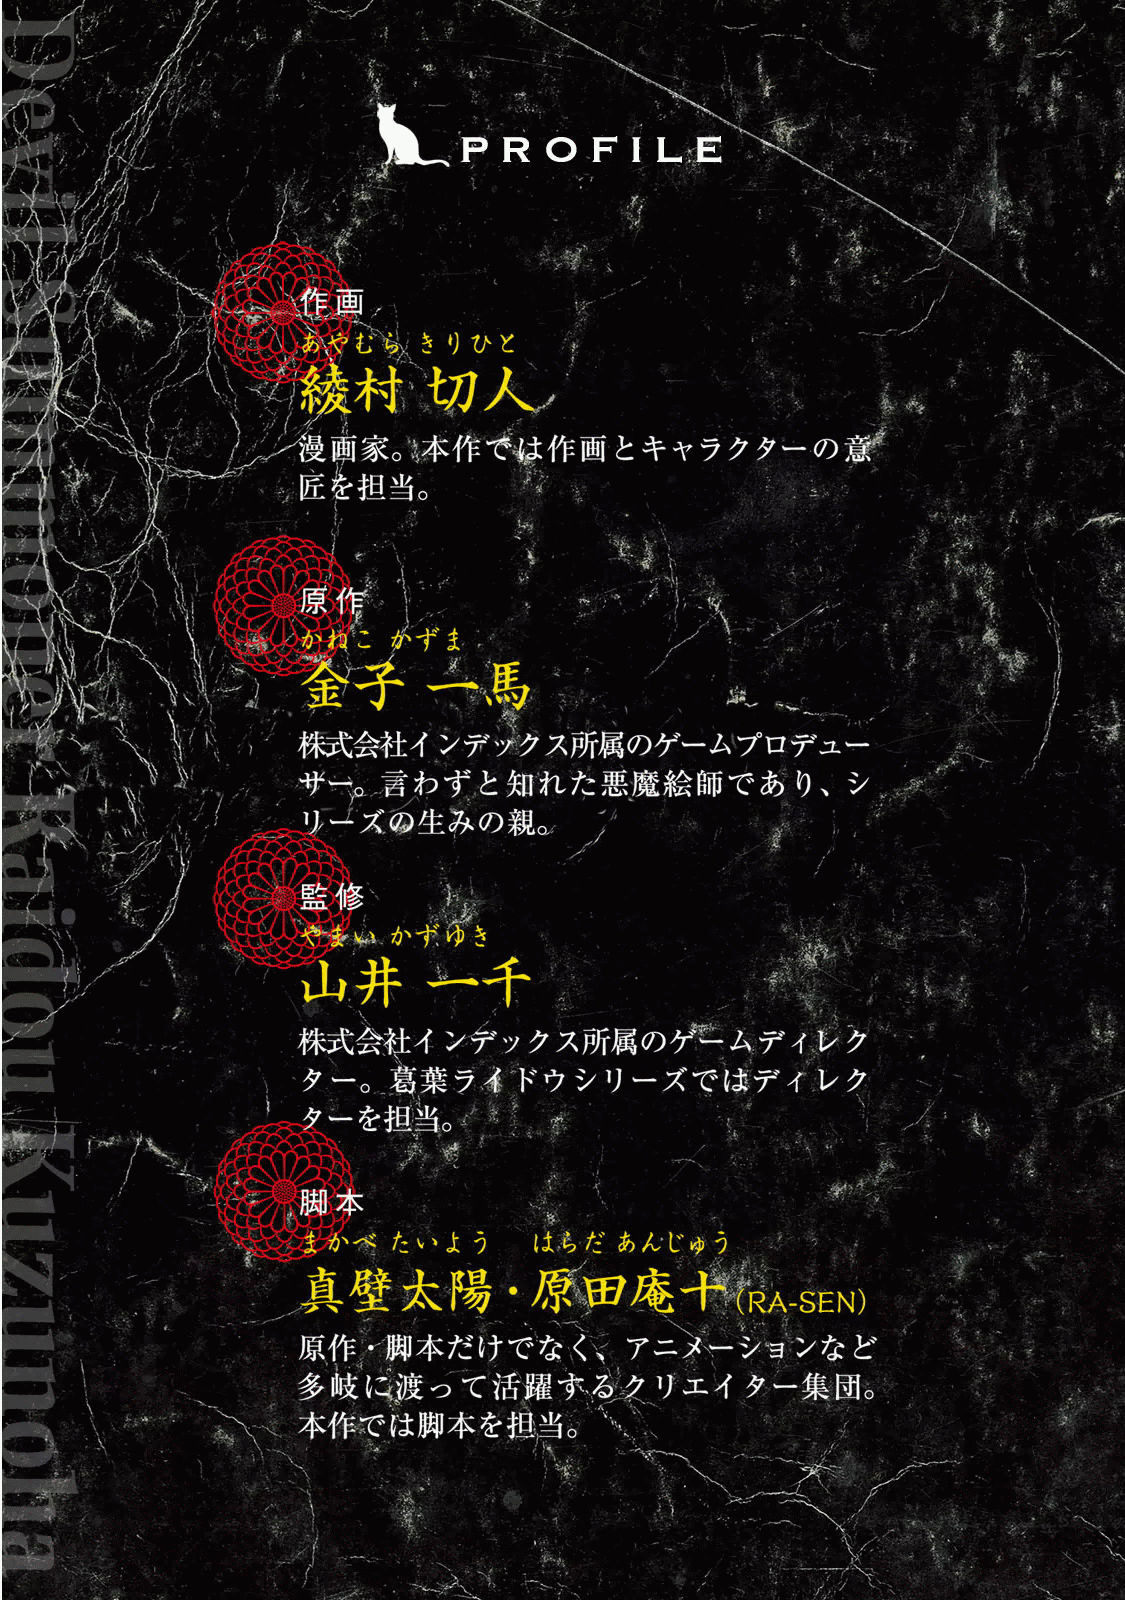 Shin Megami Tensei: Devil Summoner Kuzunoha Raidou Tai Kodokuno Marebito Vol. 4 Ch. 24.5 Volume 4 Extras